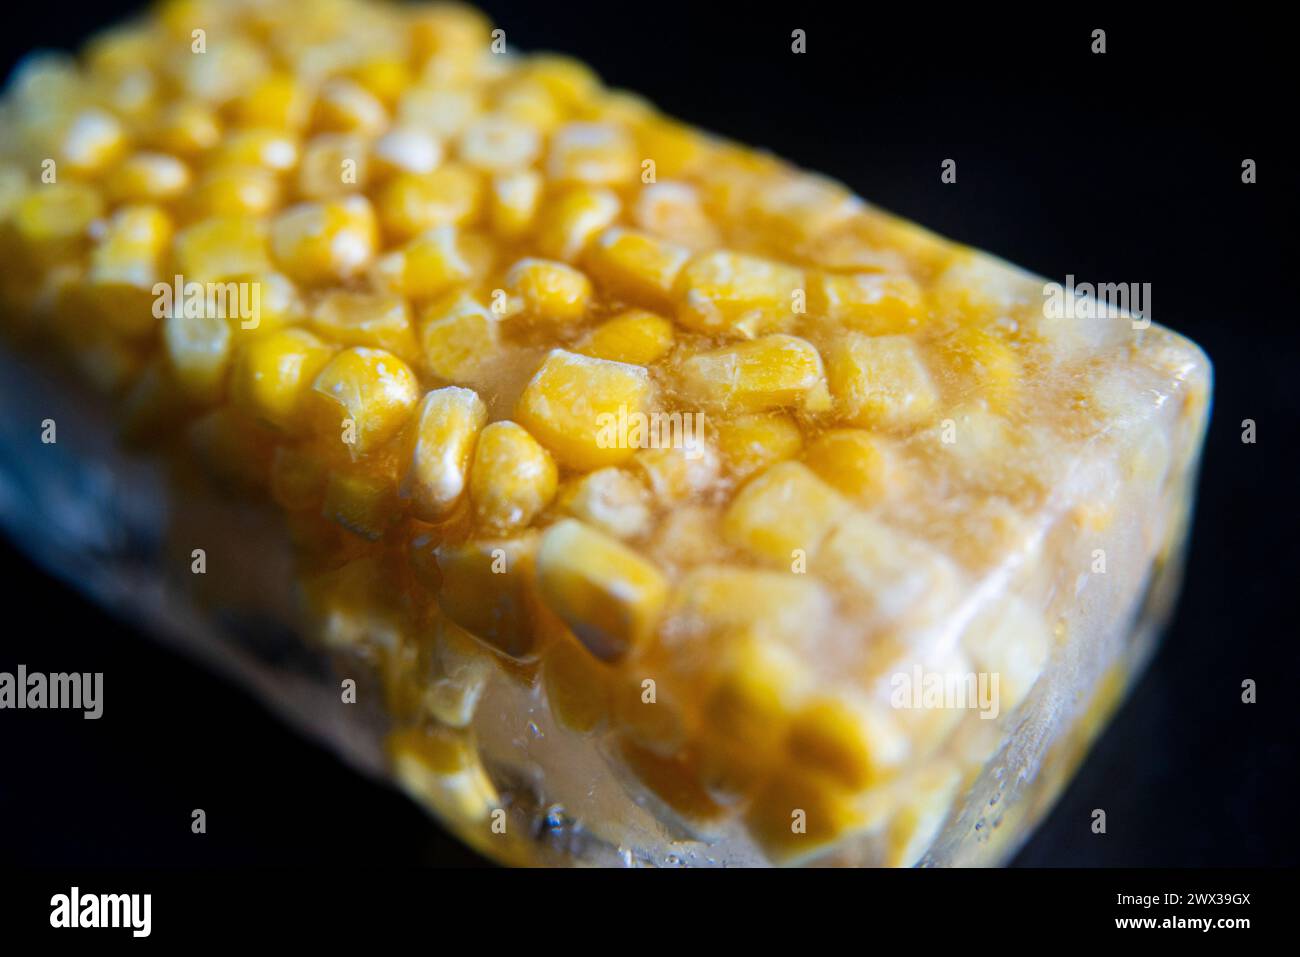 Una macro fotografia ravvicinata di chicchi di mais dolce gialli congelati in un blocco di ghiaccio su uno sfondo scuro. Foto Stock